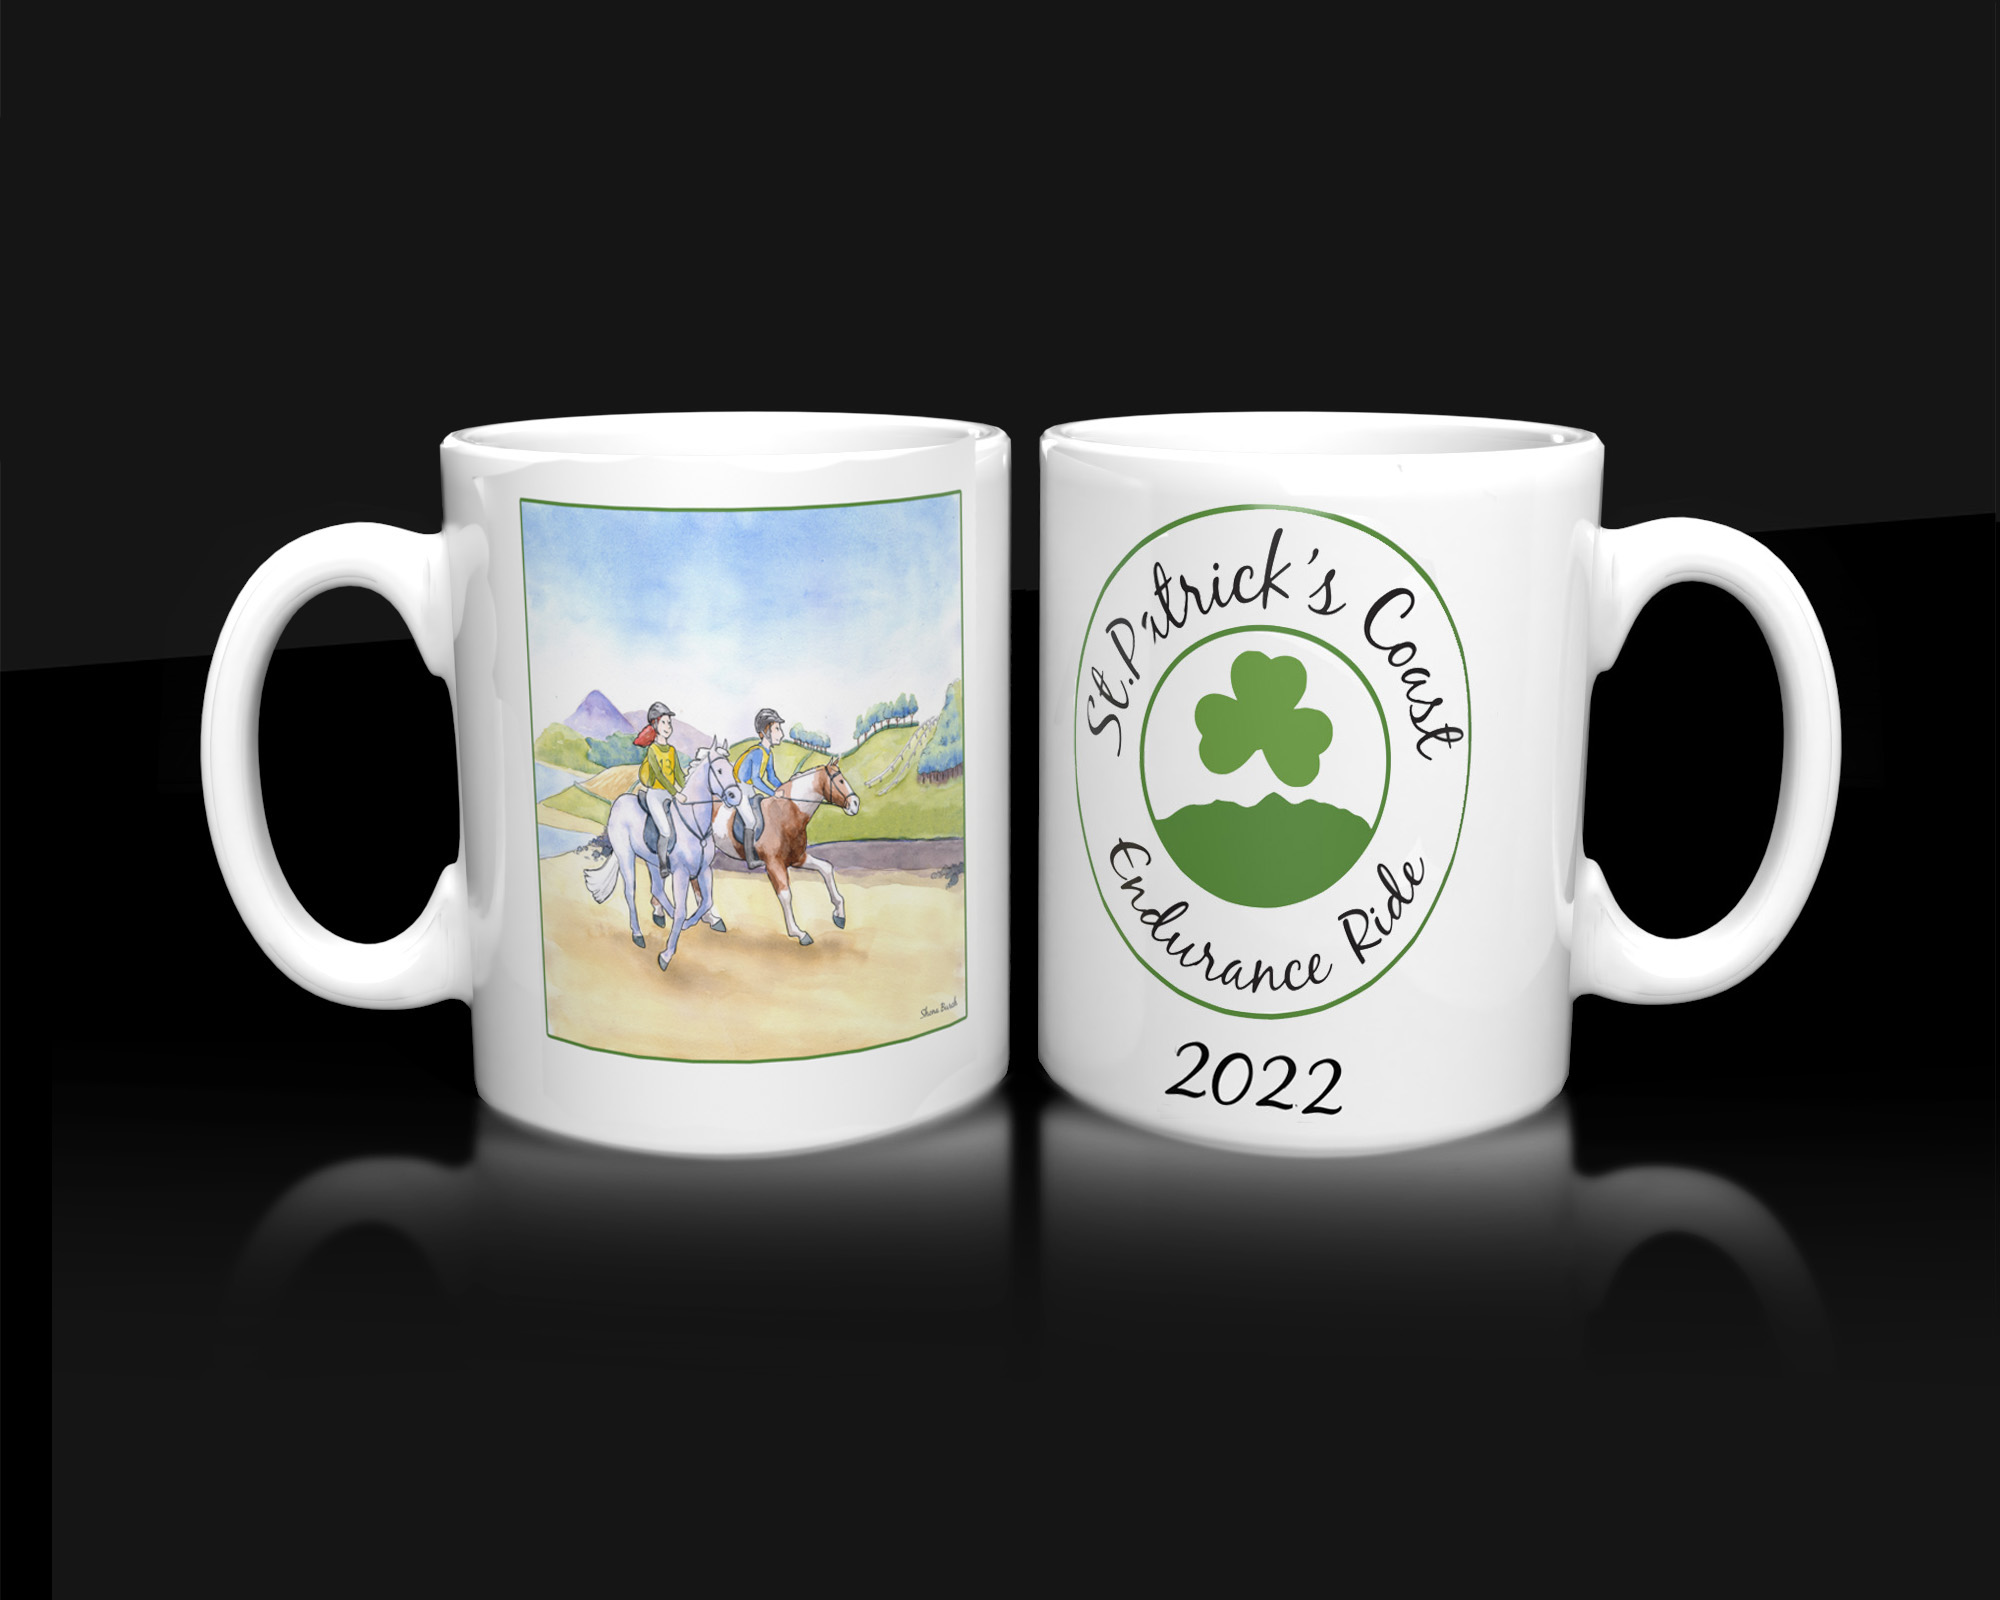 memorabilia mugs New for 2022